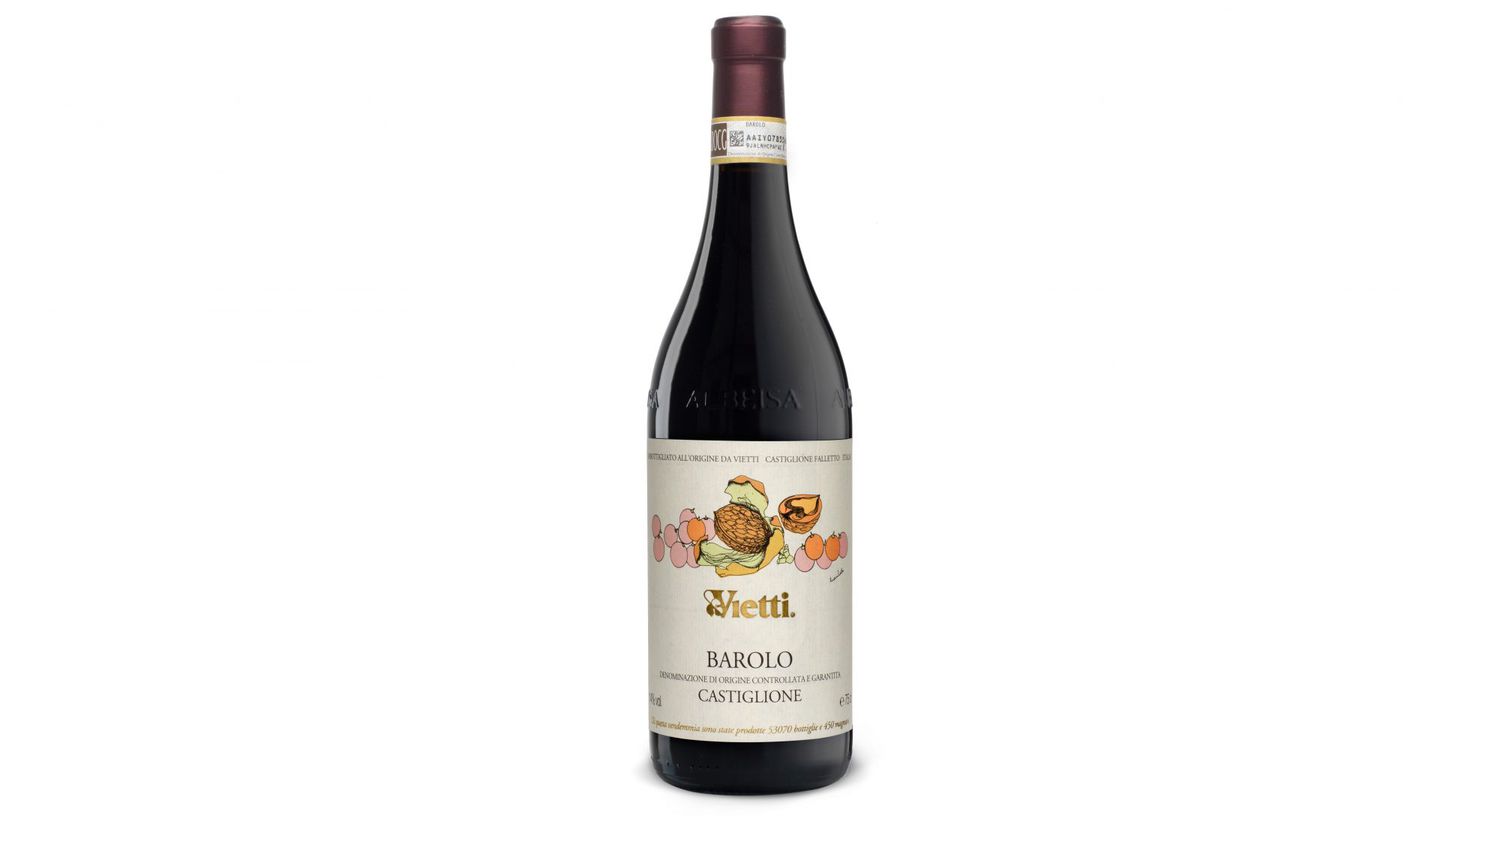 special occasion wines vietti barolo castiglione